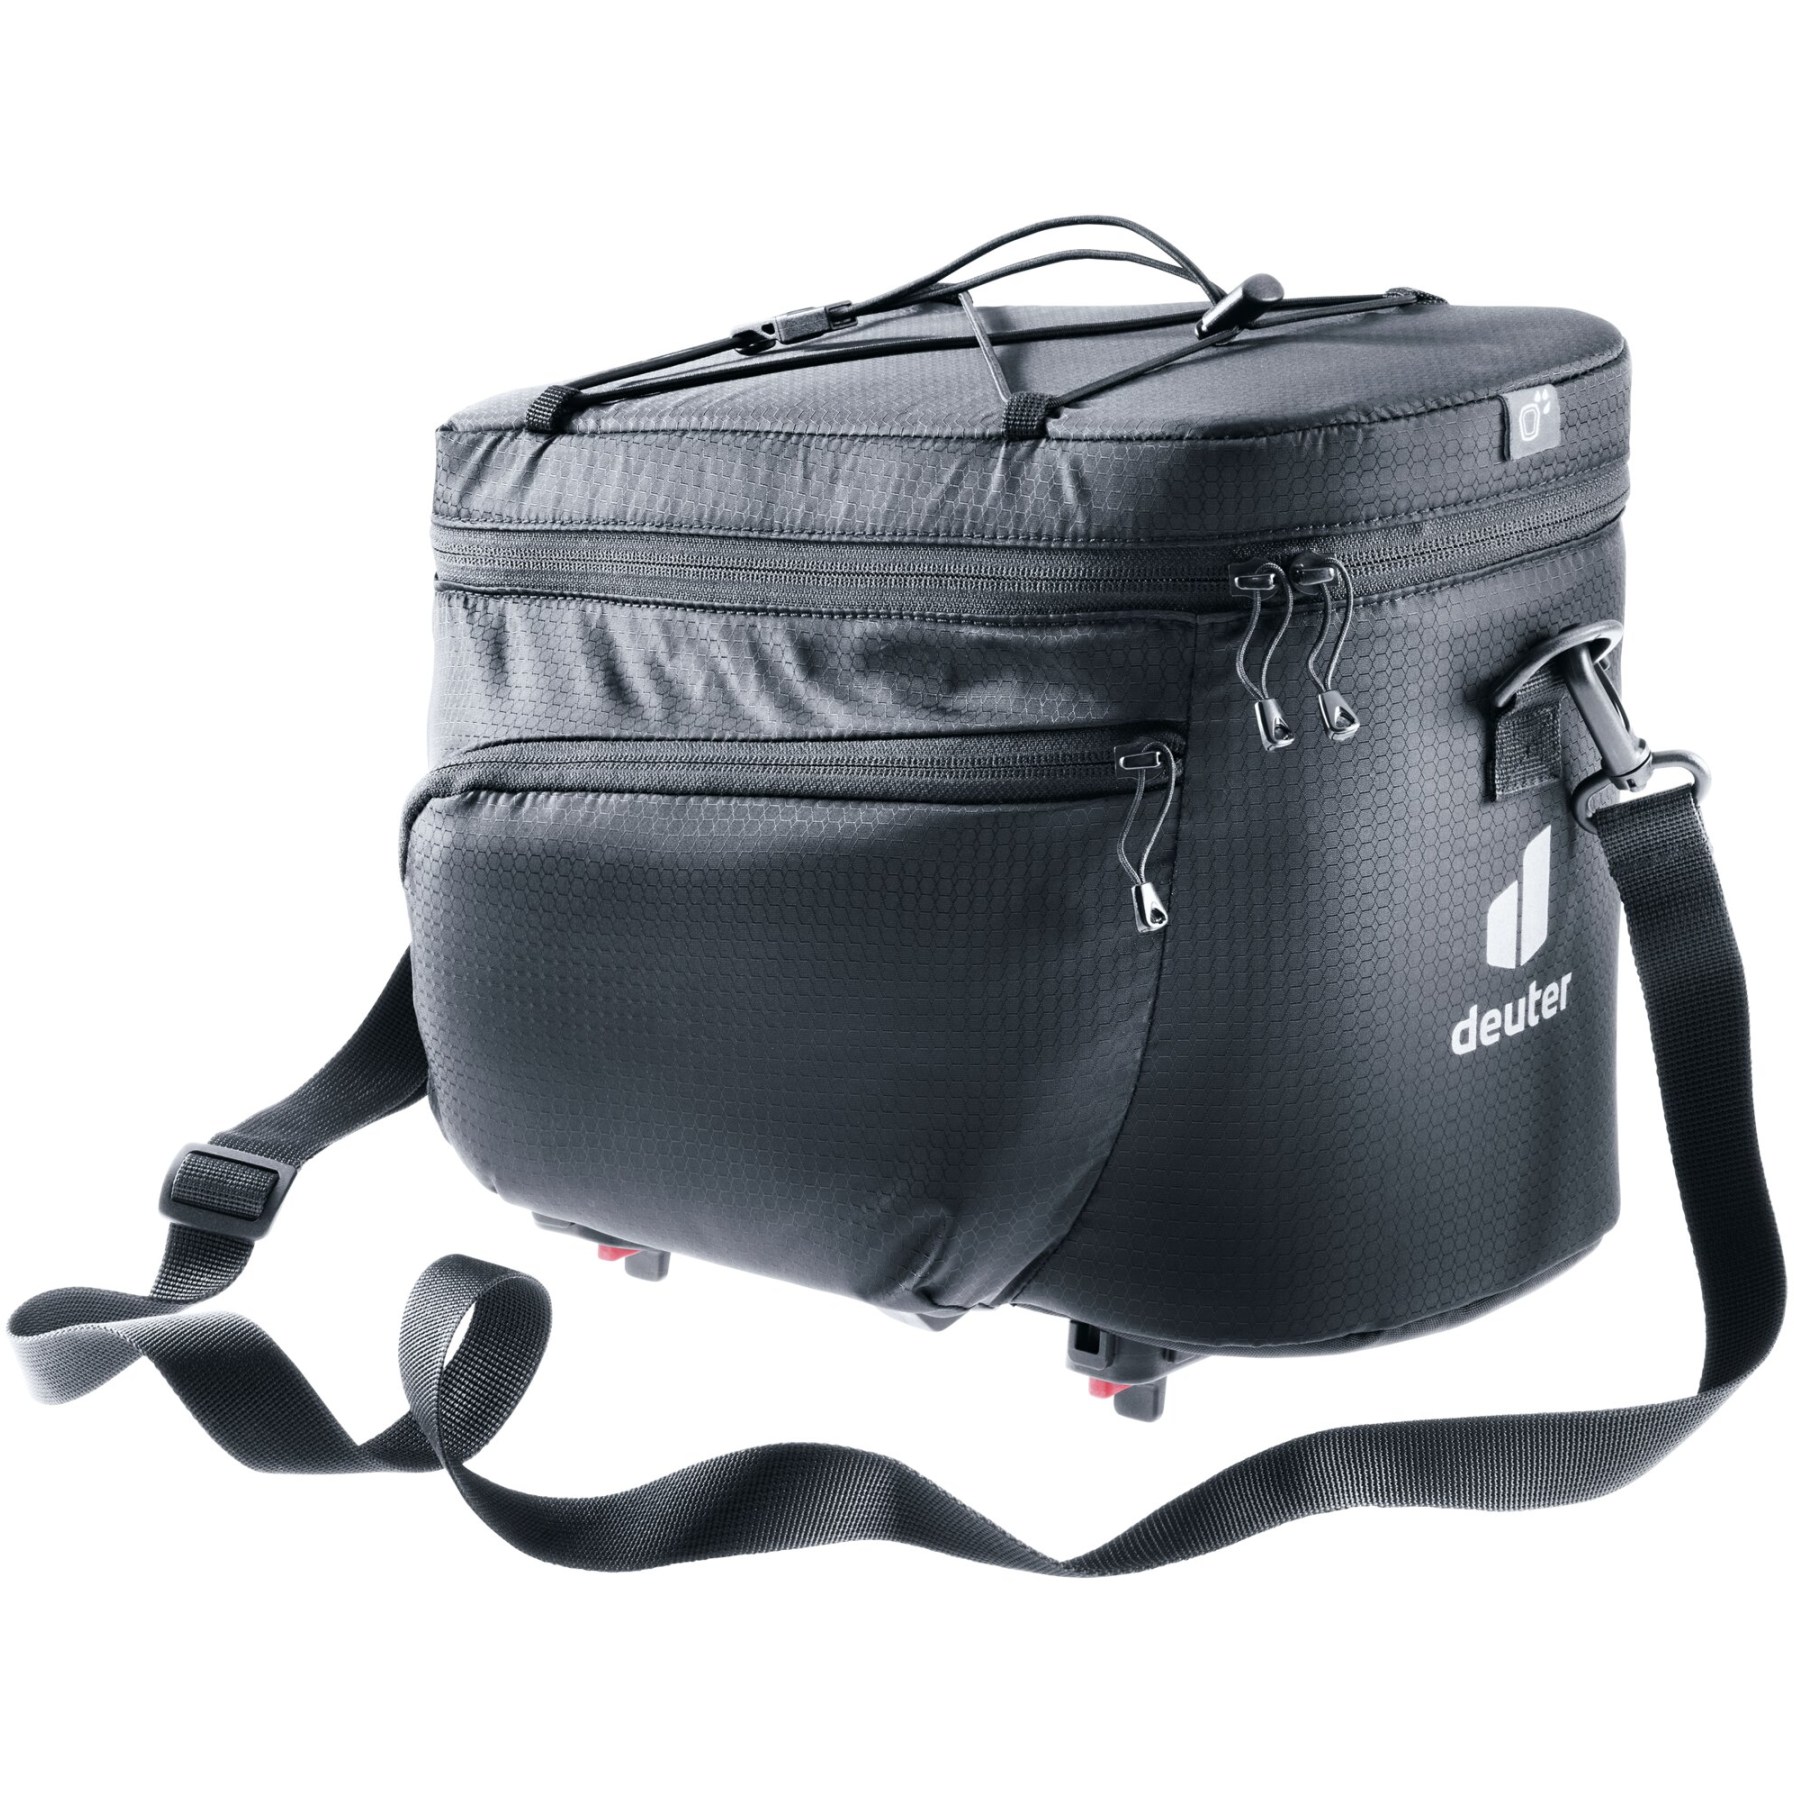 Produktbild von Deuter Rack Bag 10 KF Gepäckträgertasche - schwarz